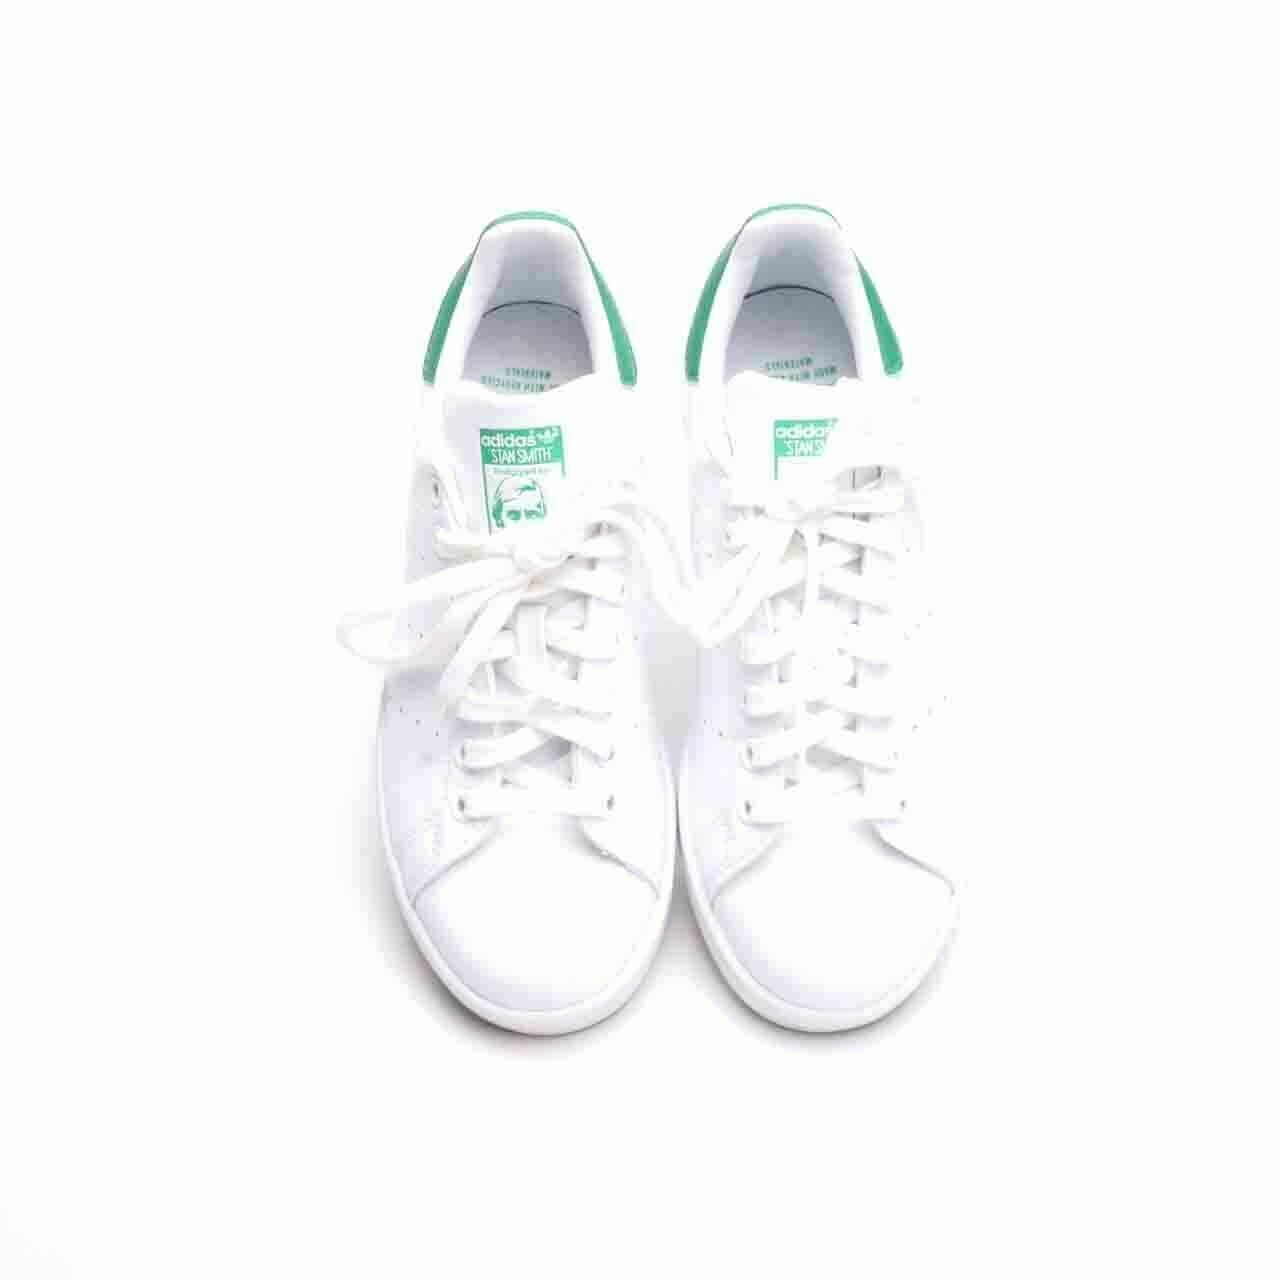 Adidas Stan Smith US White Green Skate Sneaker